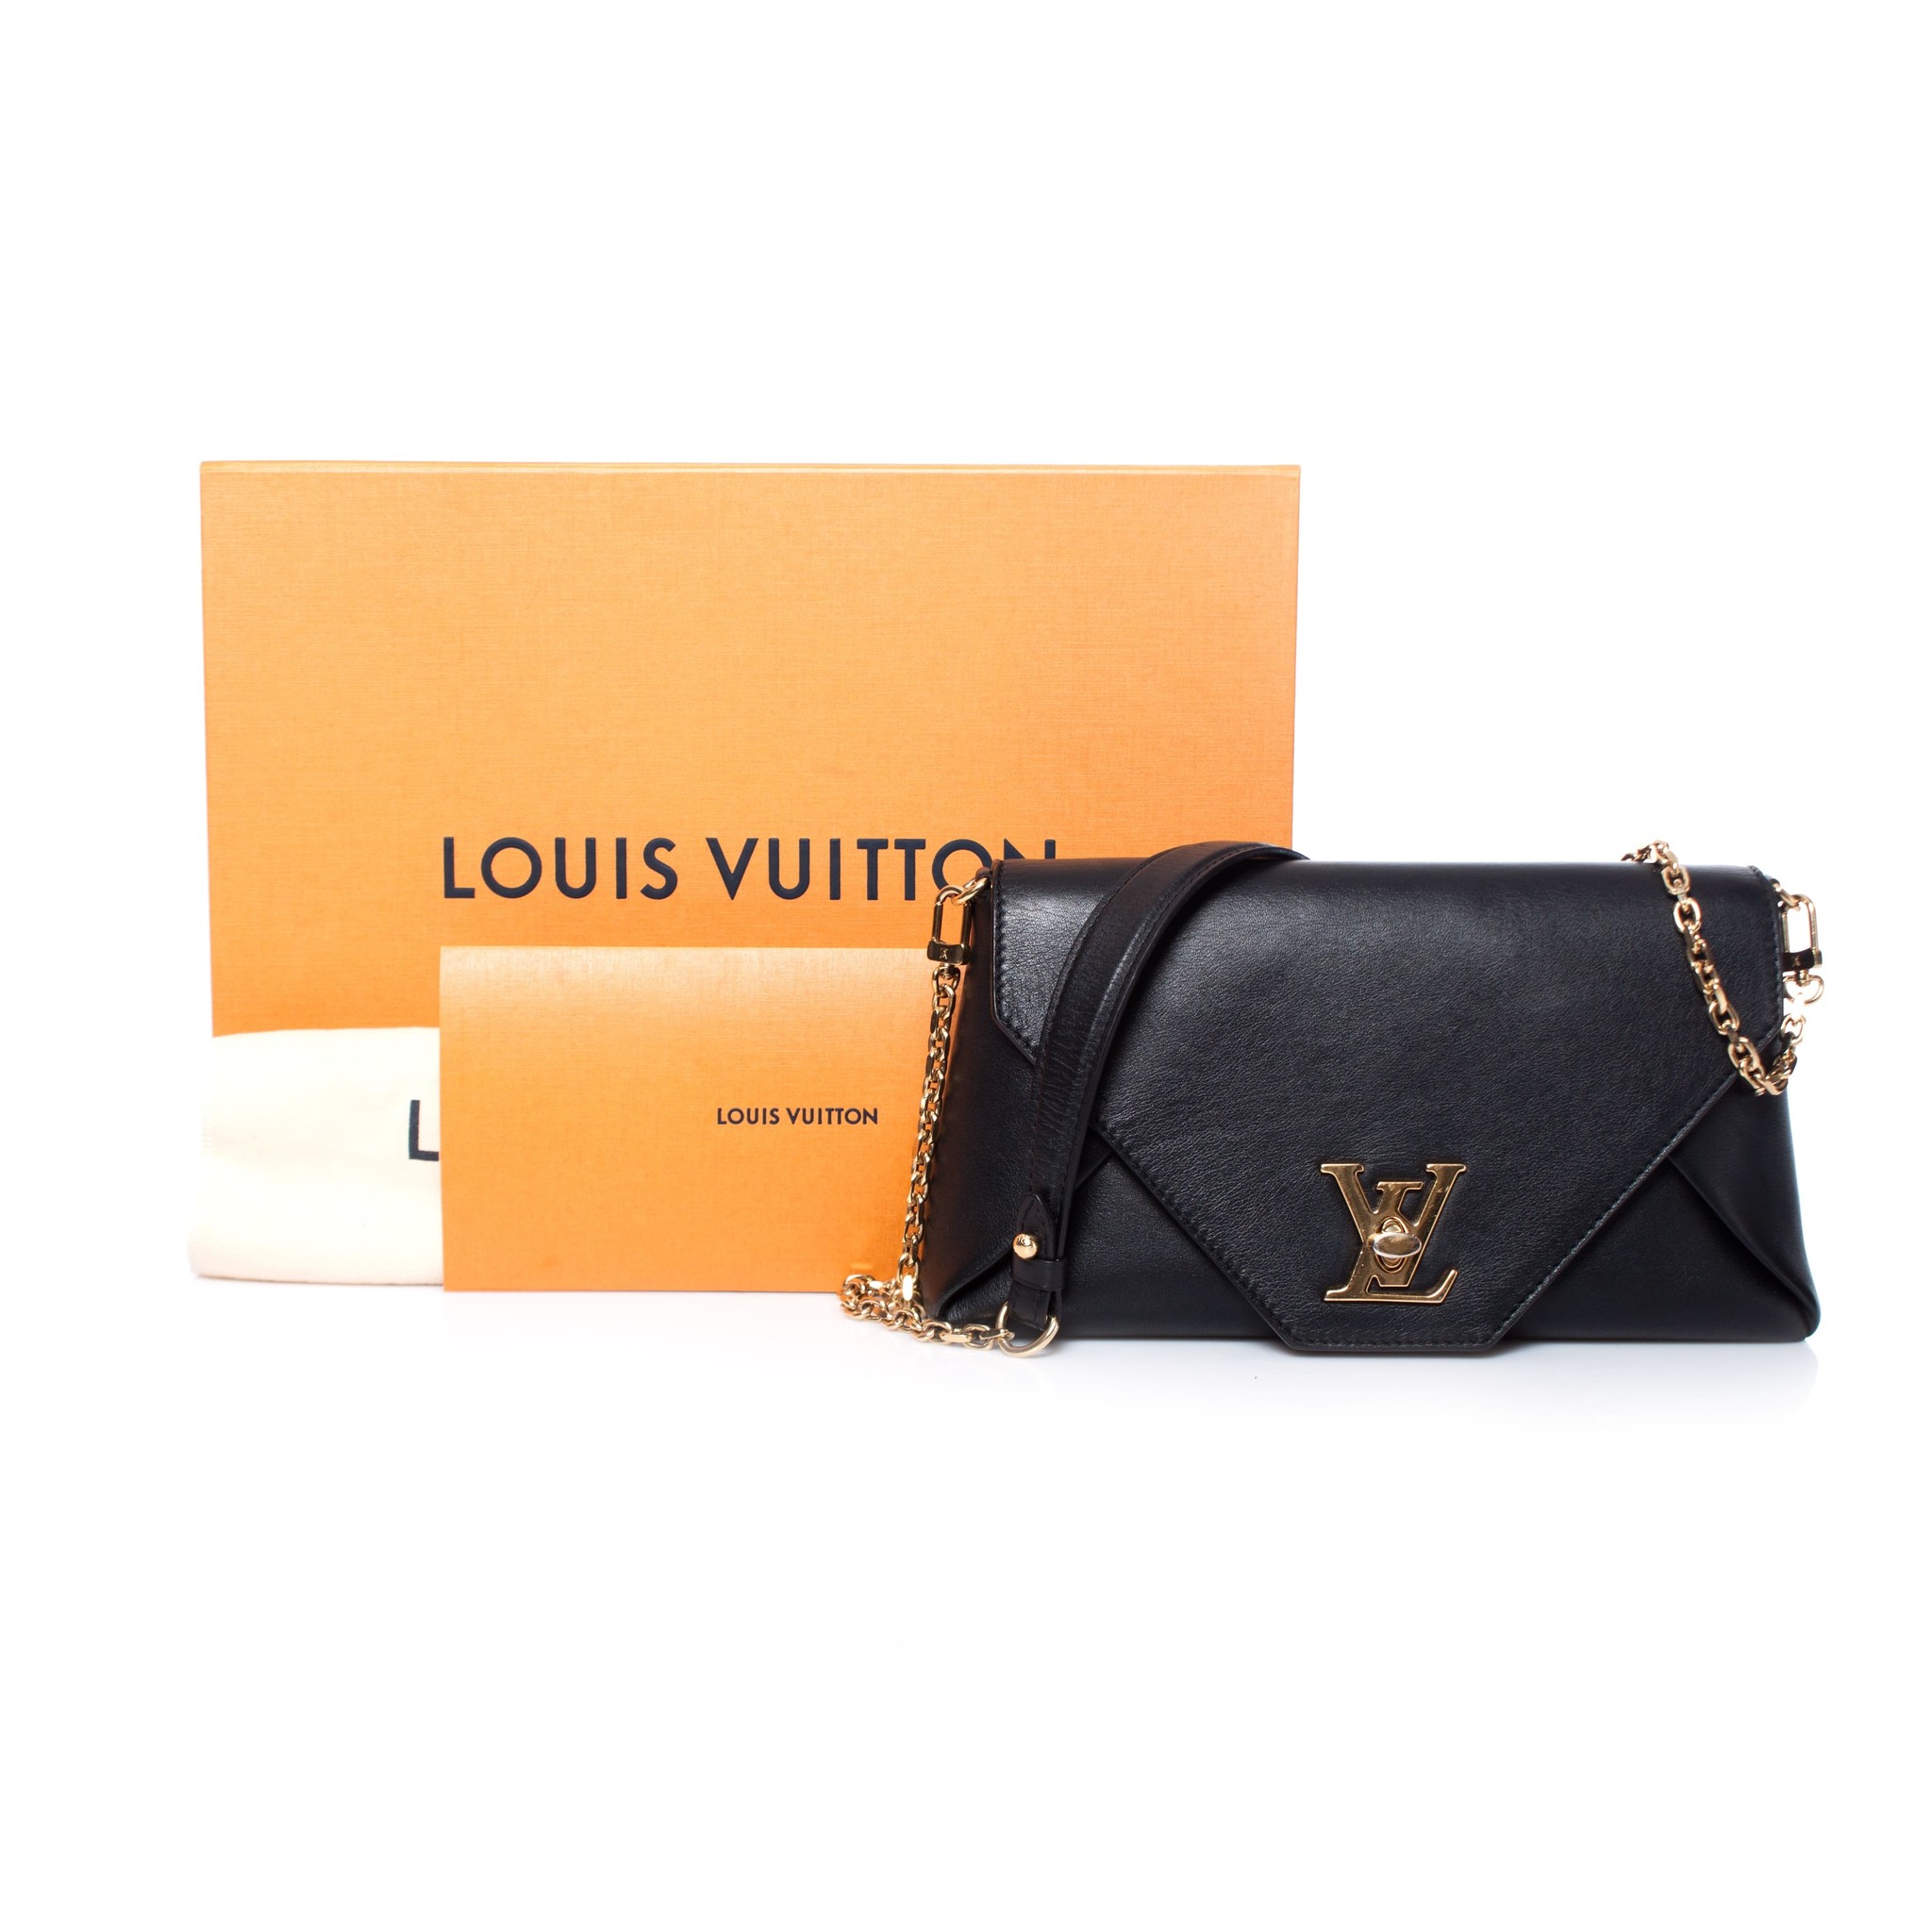 Louis Vuitton, Love note. - Unique Designer Pieces